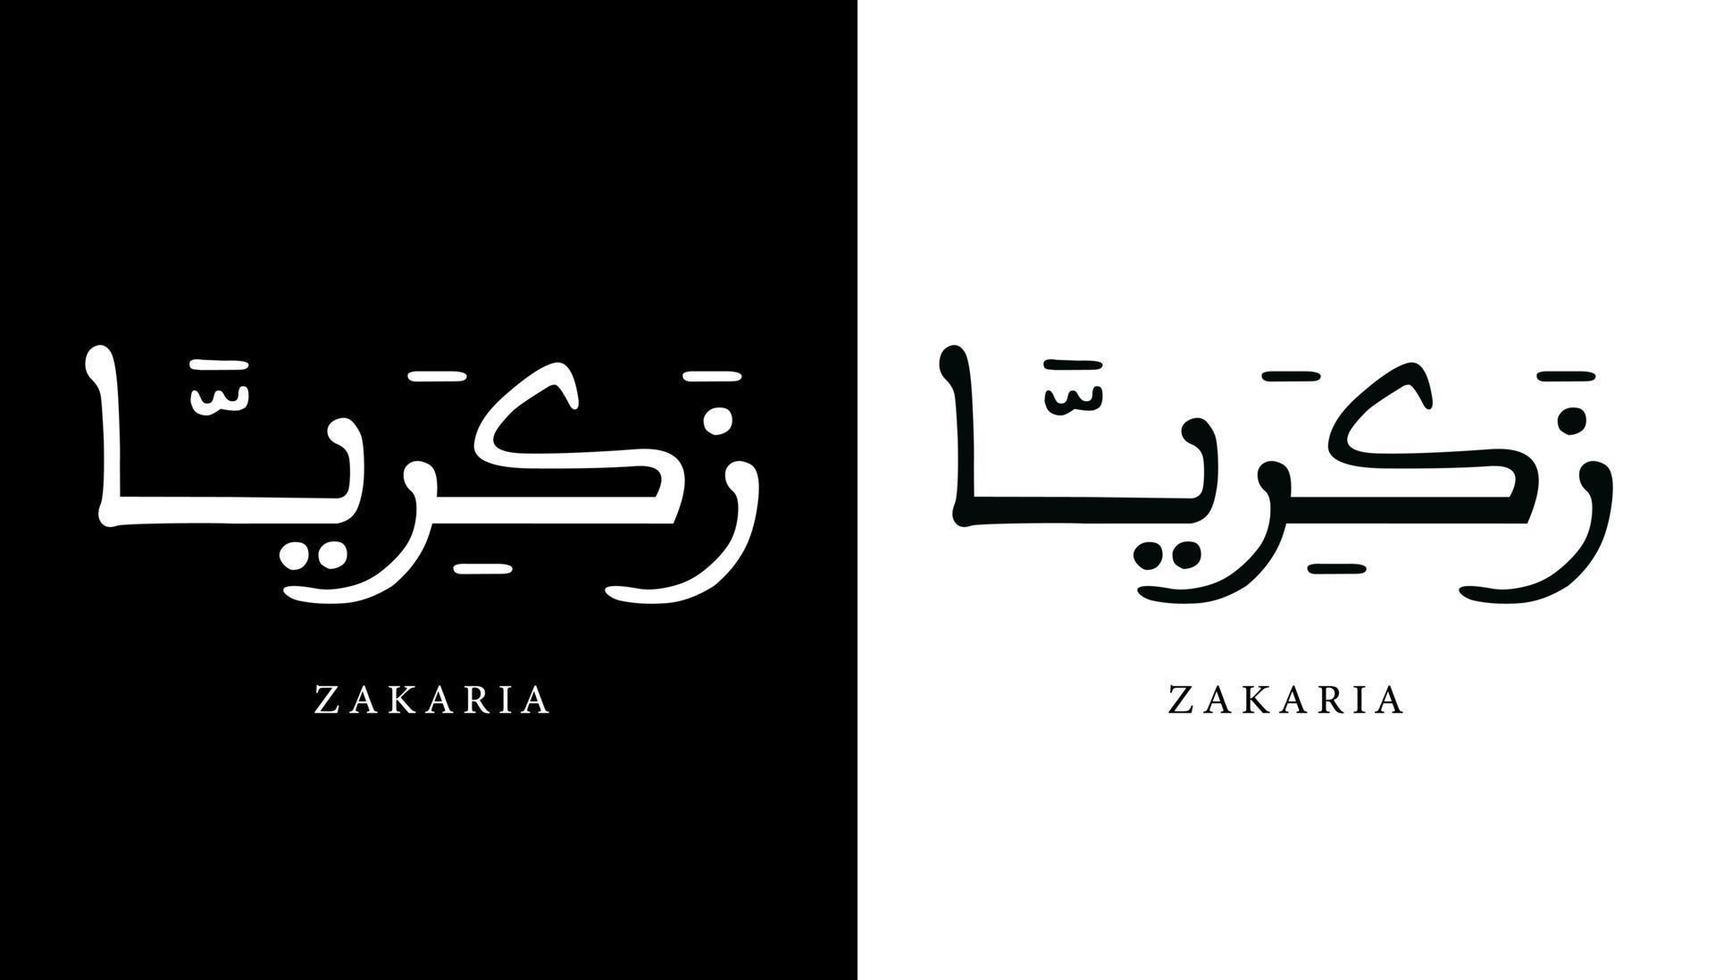 nome della calligrafia araba tradotto 'zakaria' lettere arabe alfabeto font lettering logo islamico illustrazione vettoriale